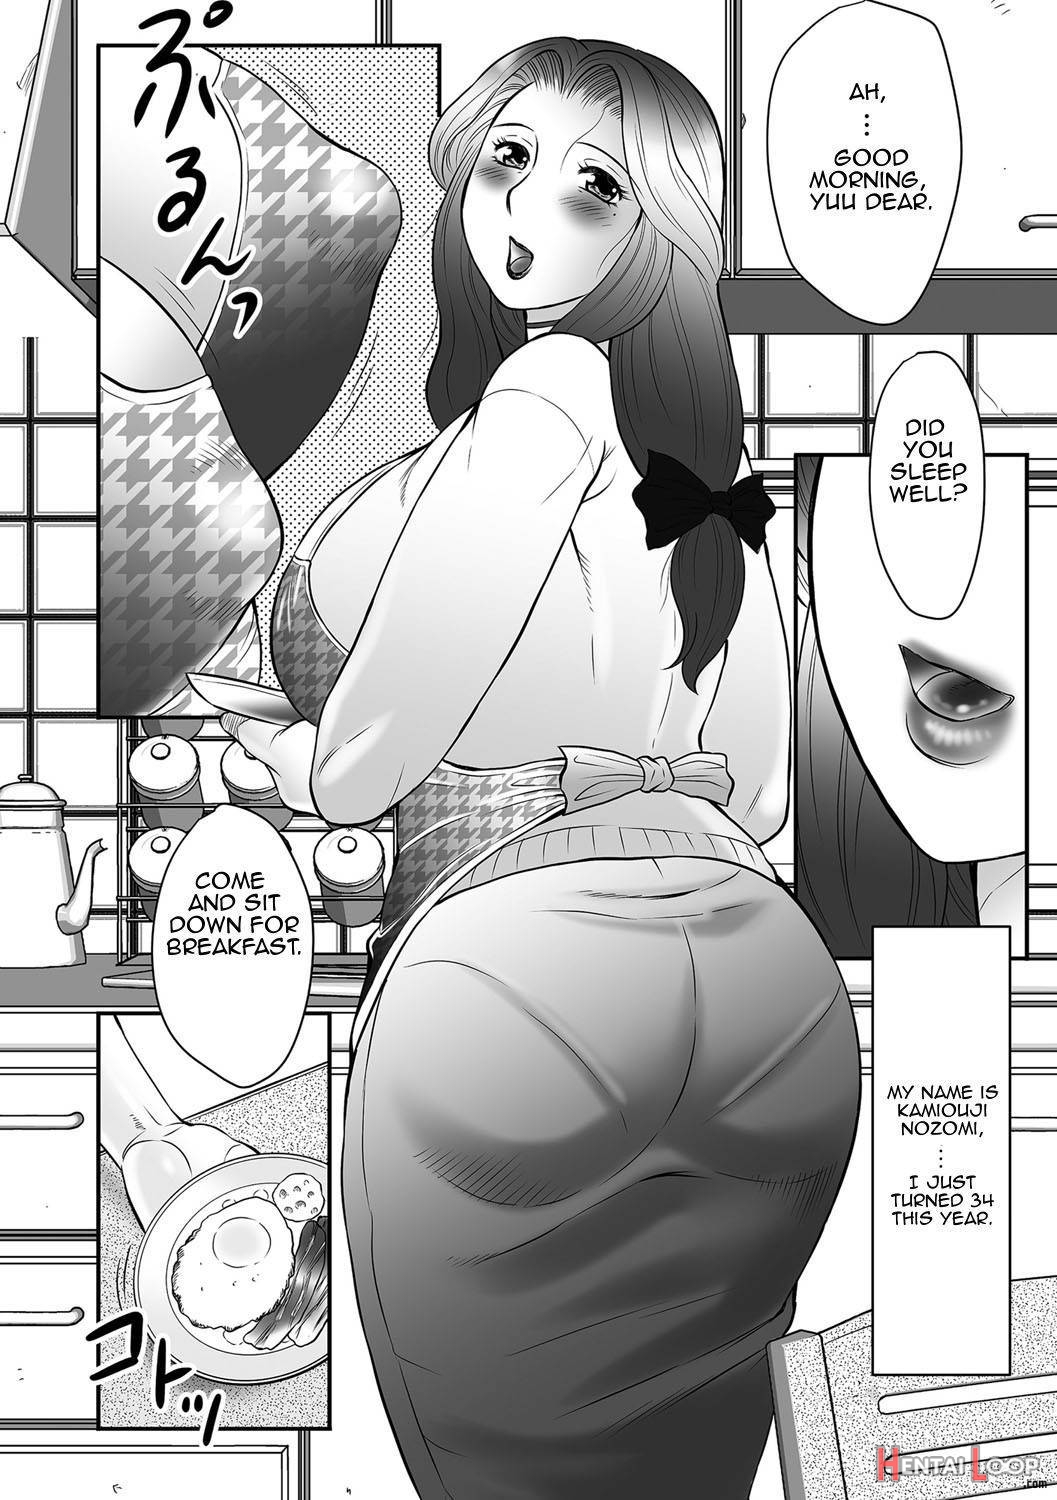 Boshi no Susume page 6